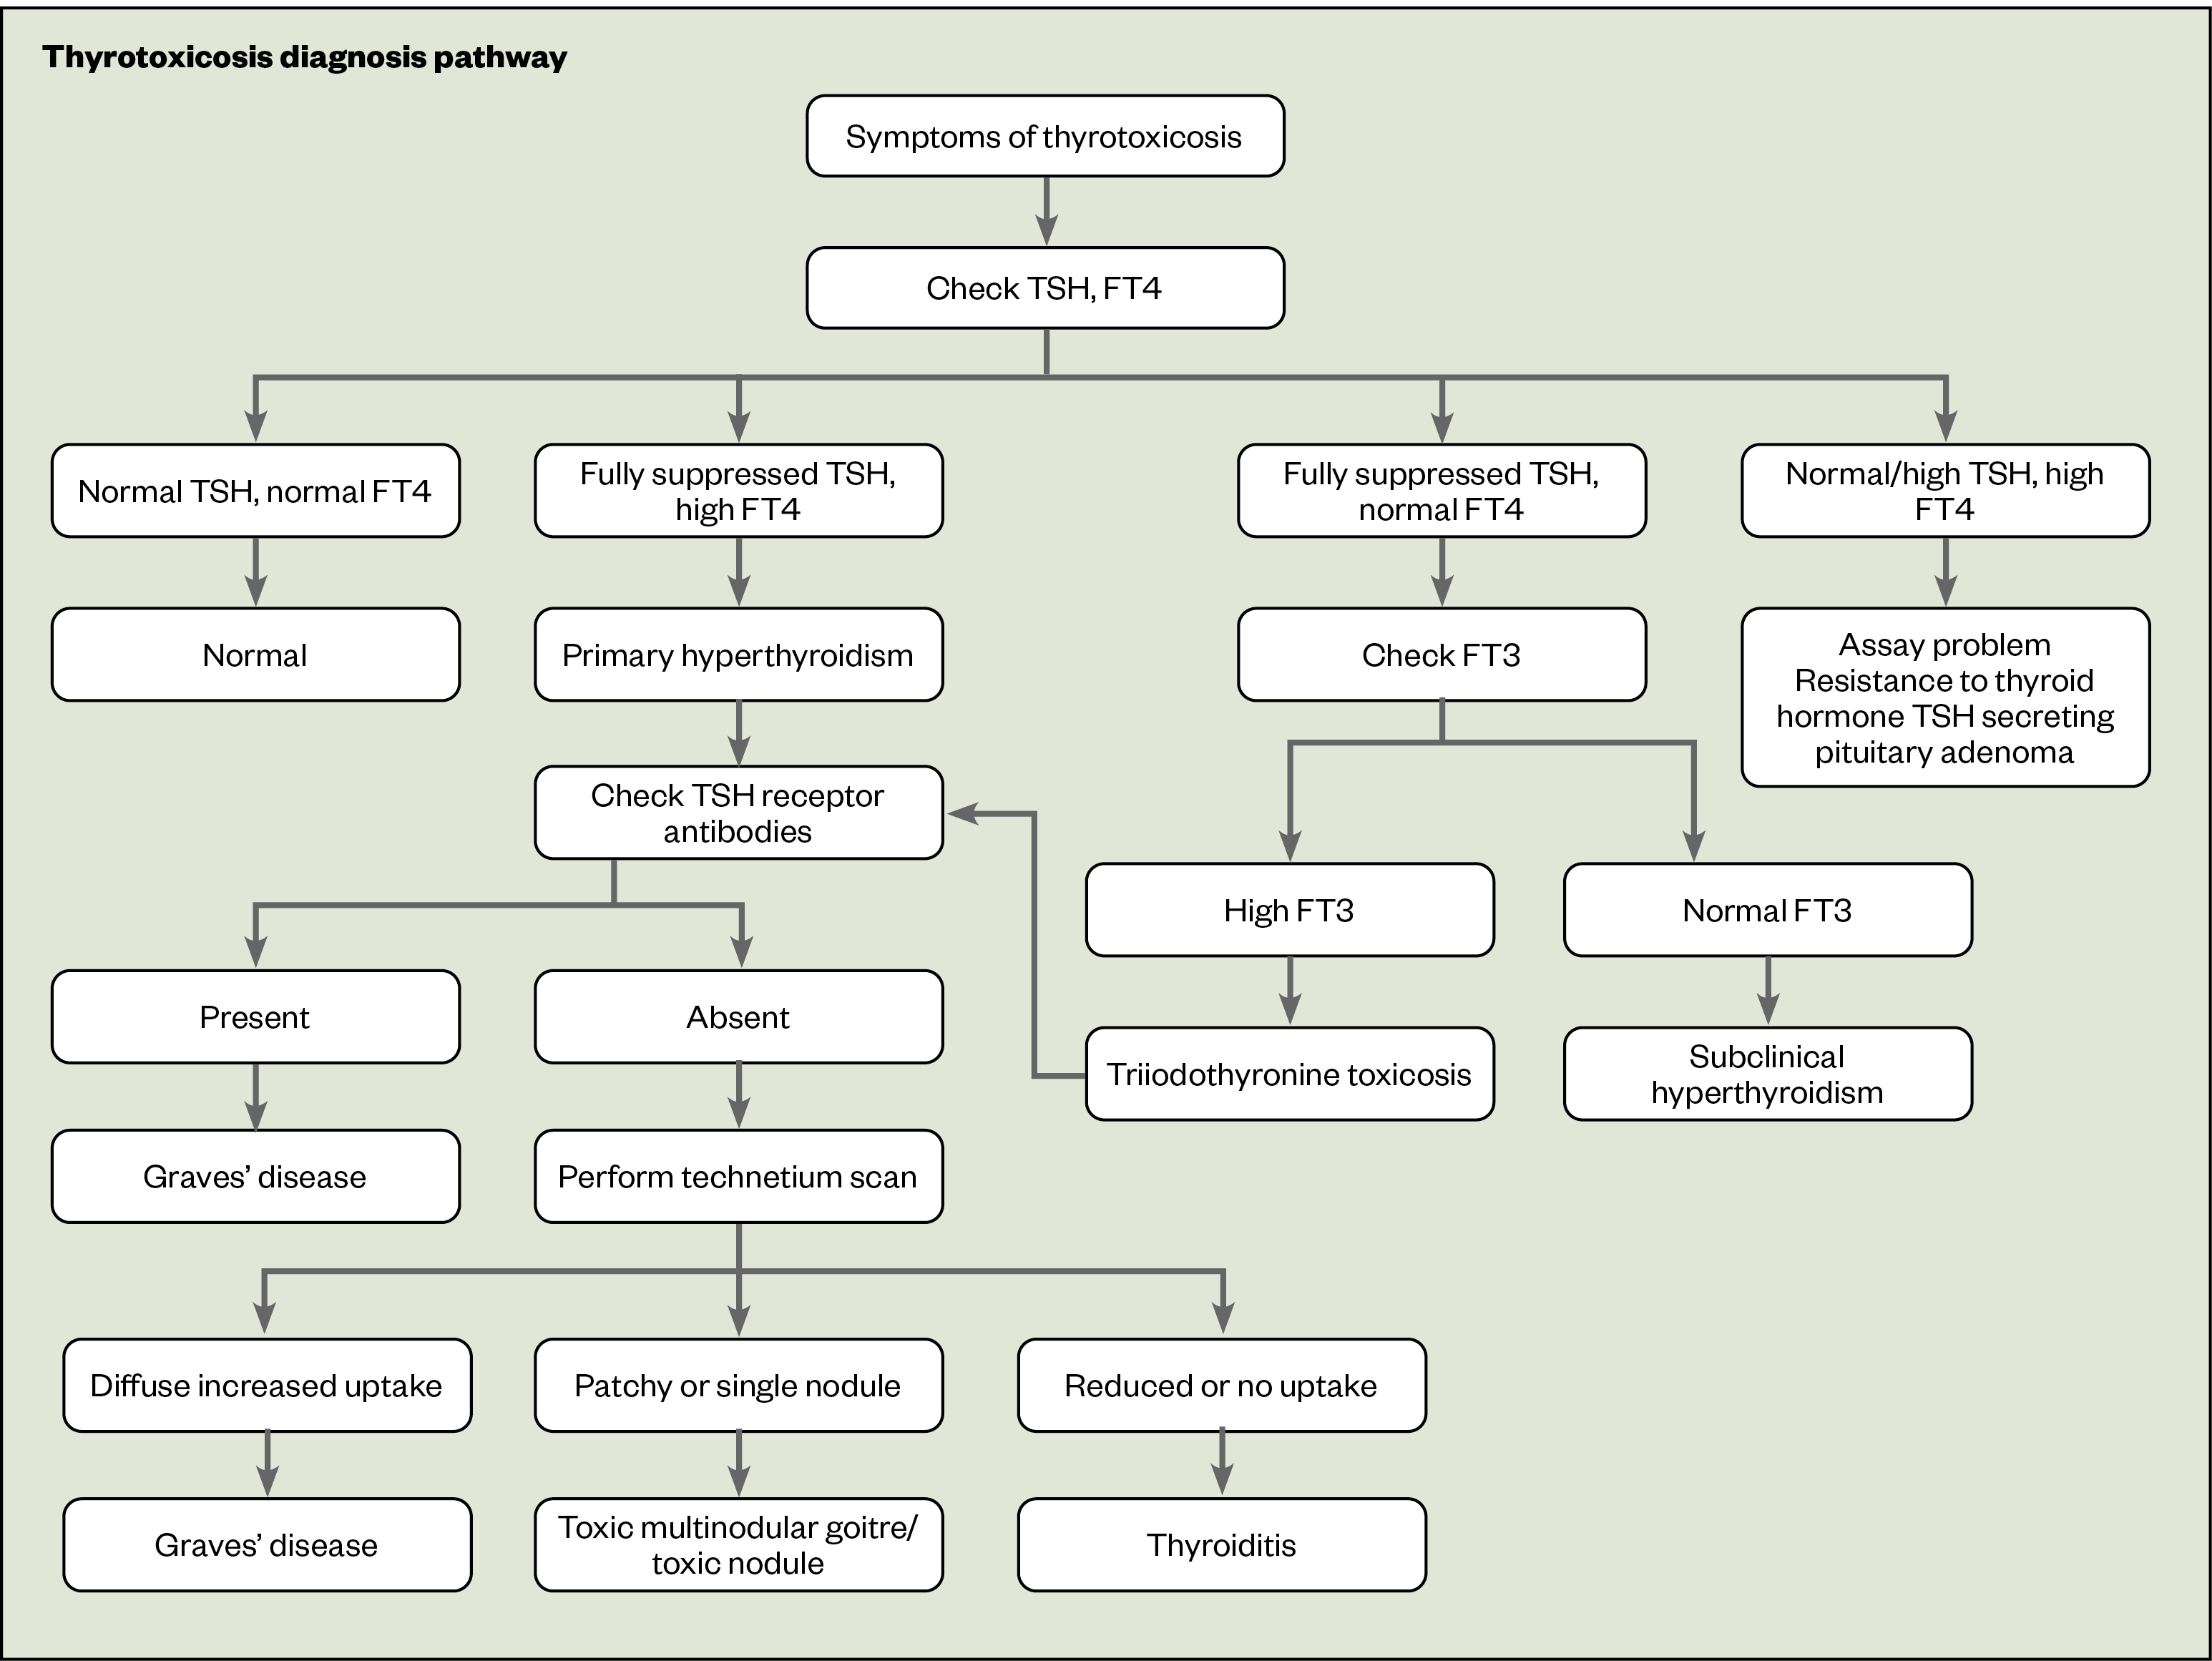 Figure 1: Thyrotoxicosis diagnosis pathway